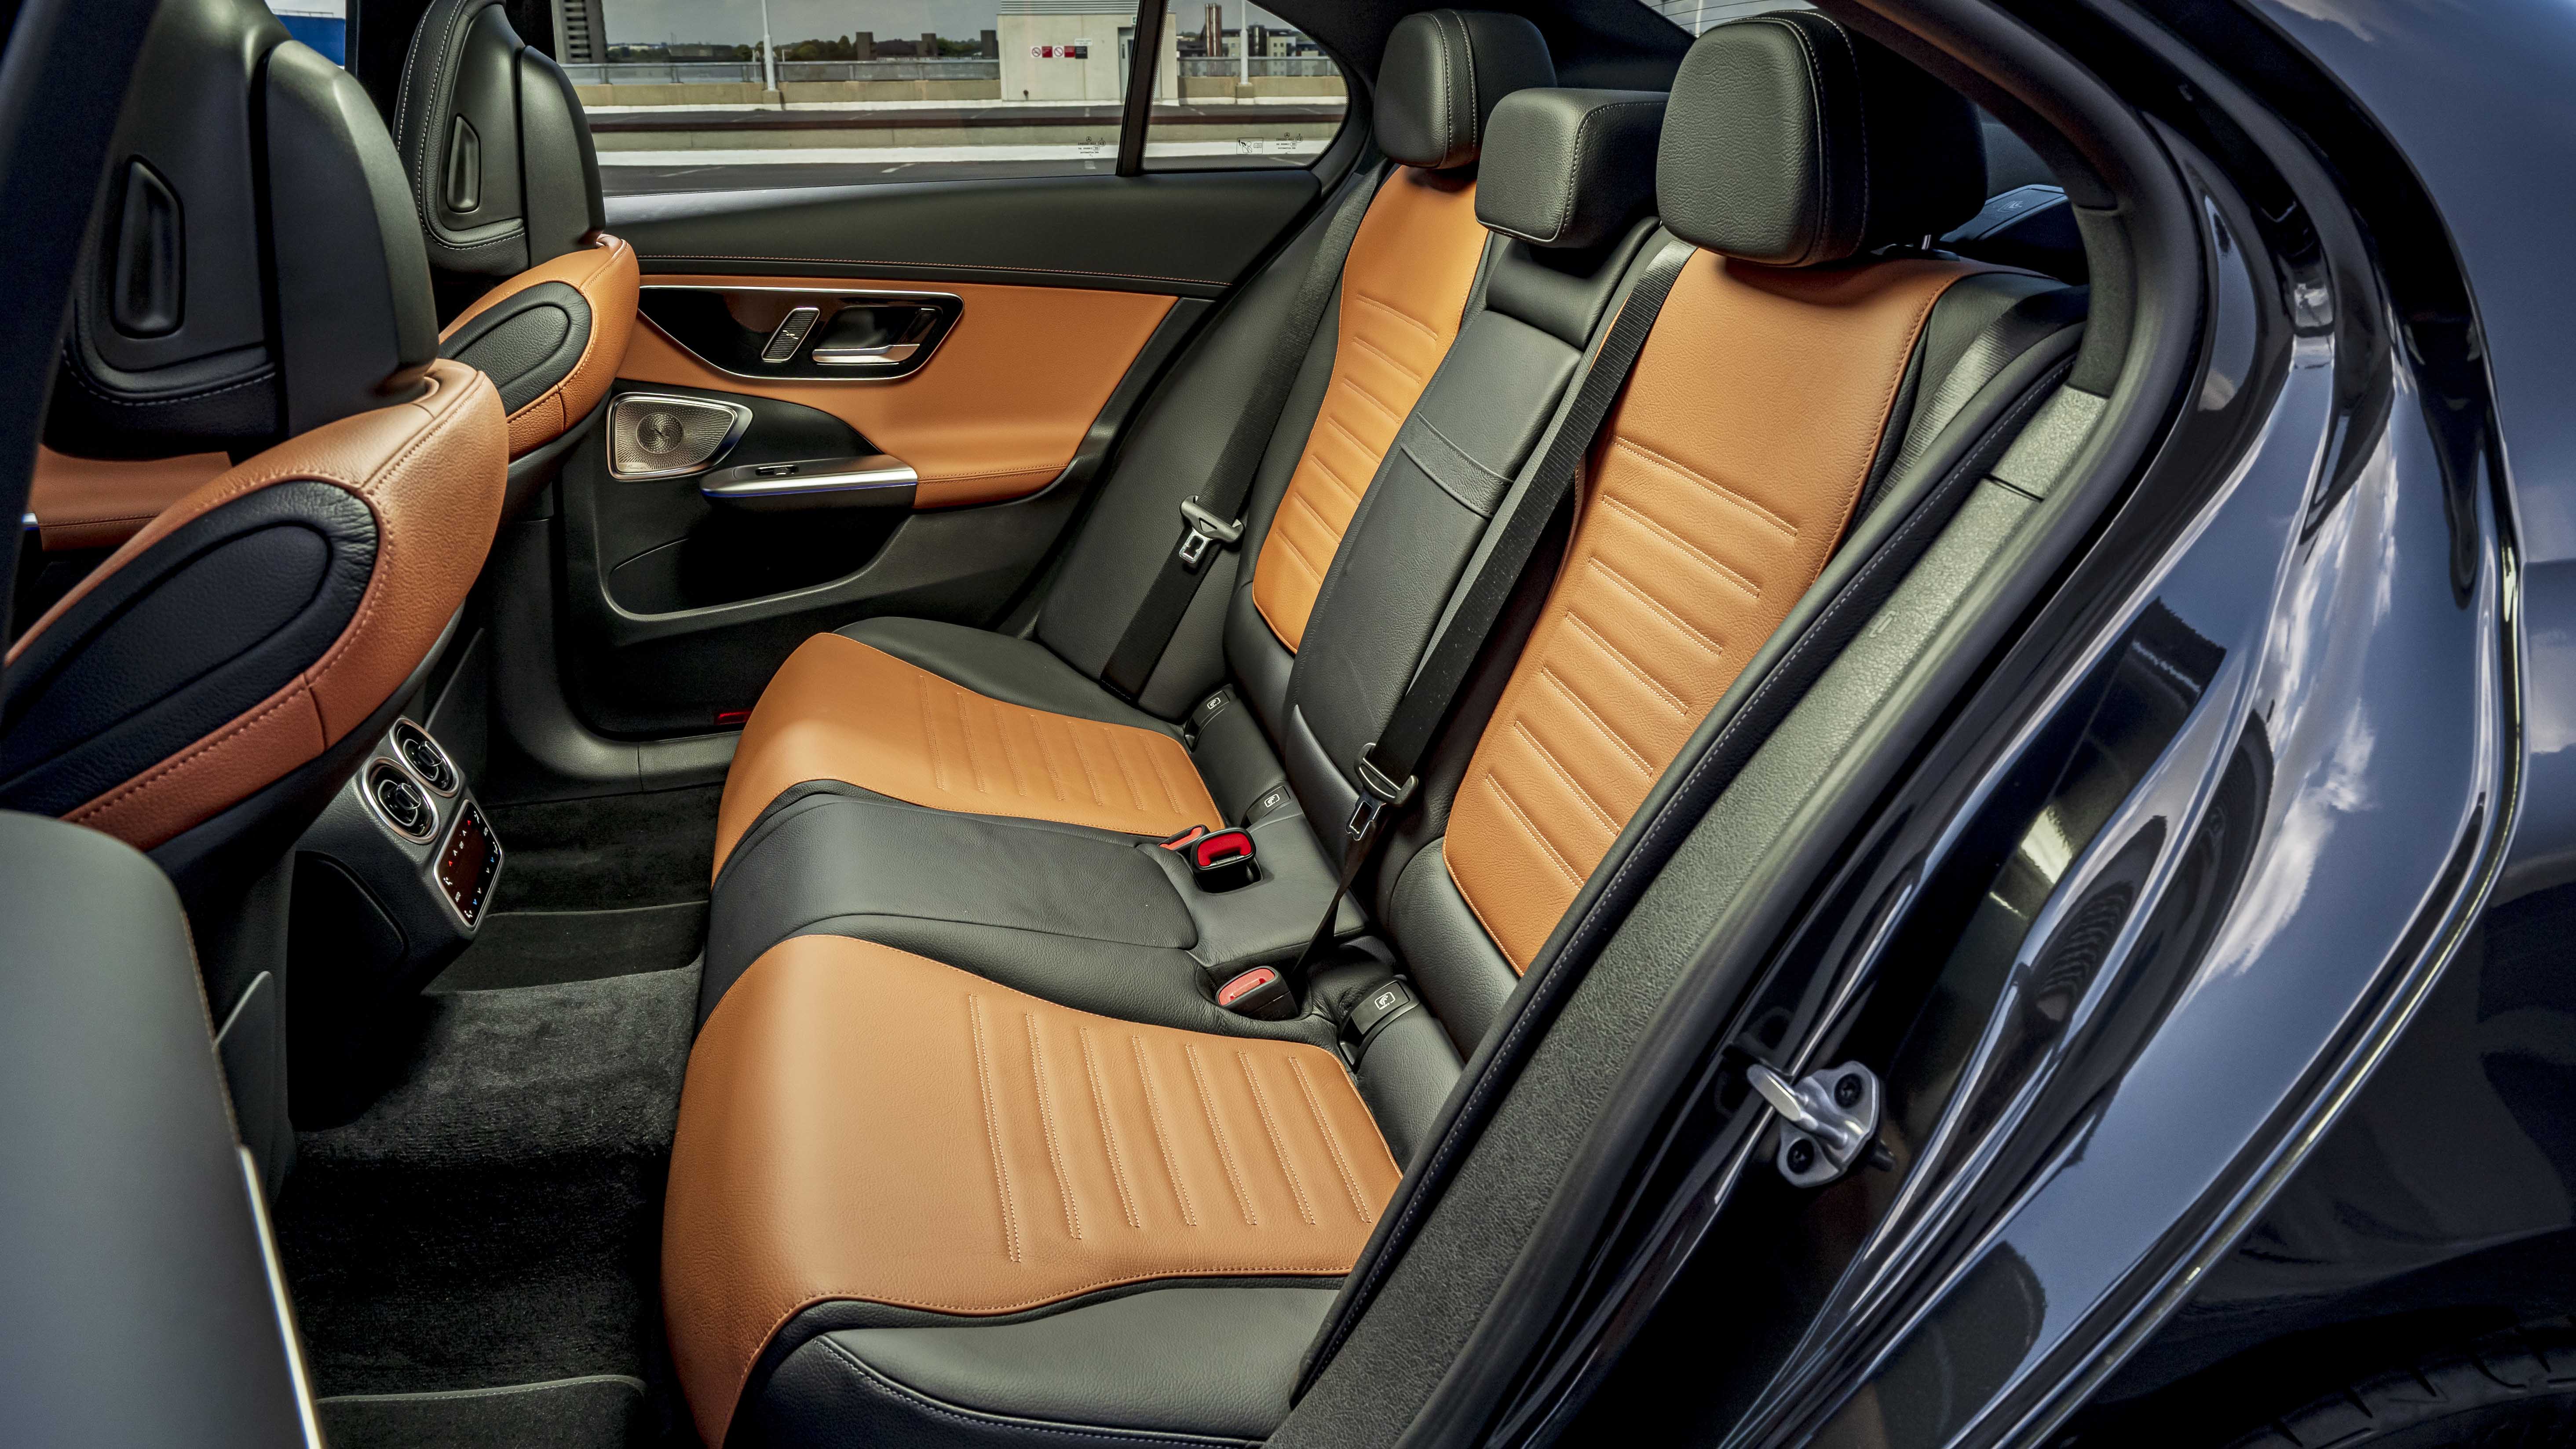 Mercedes-Benz C200 interior - Seats